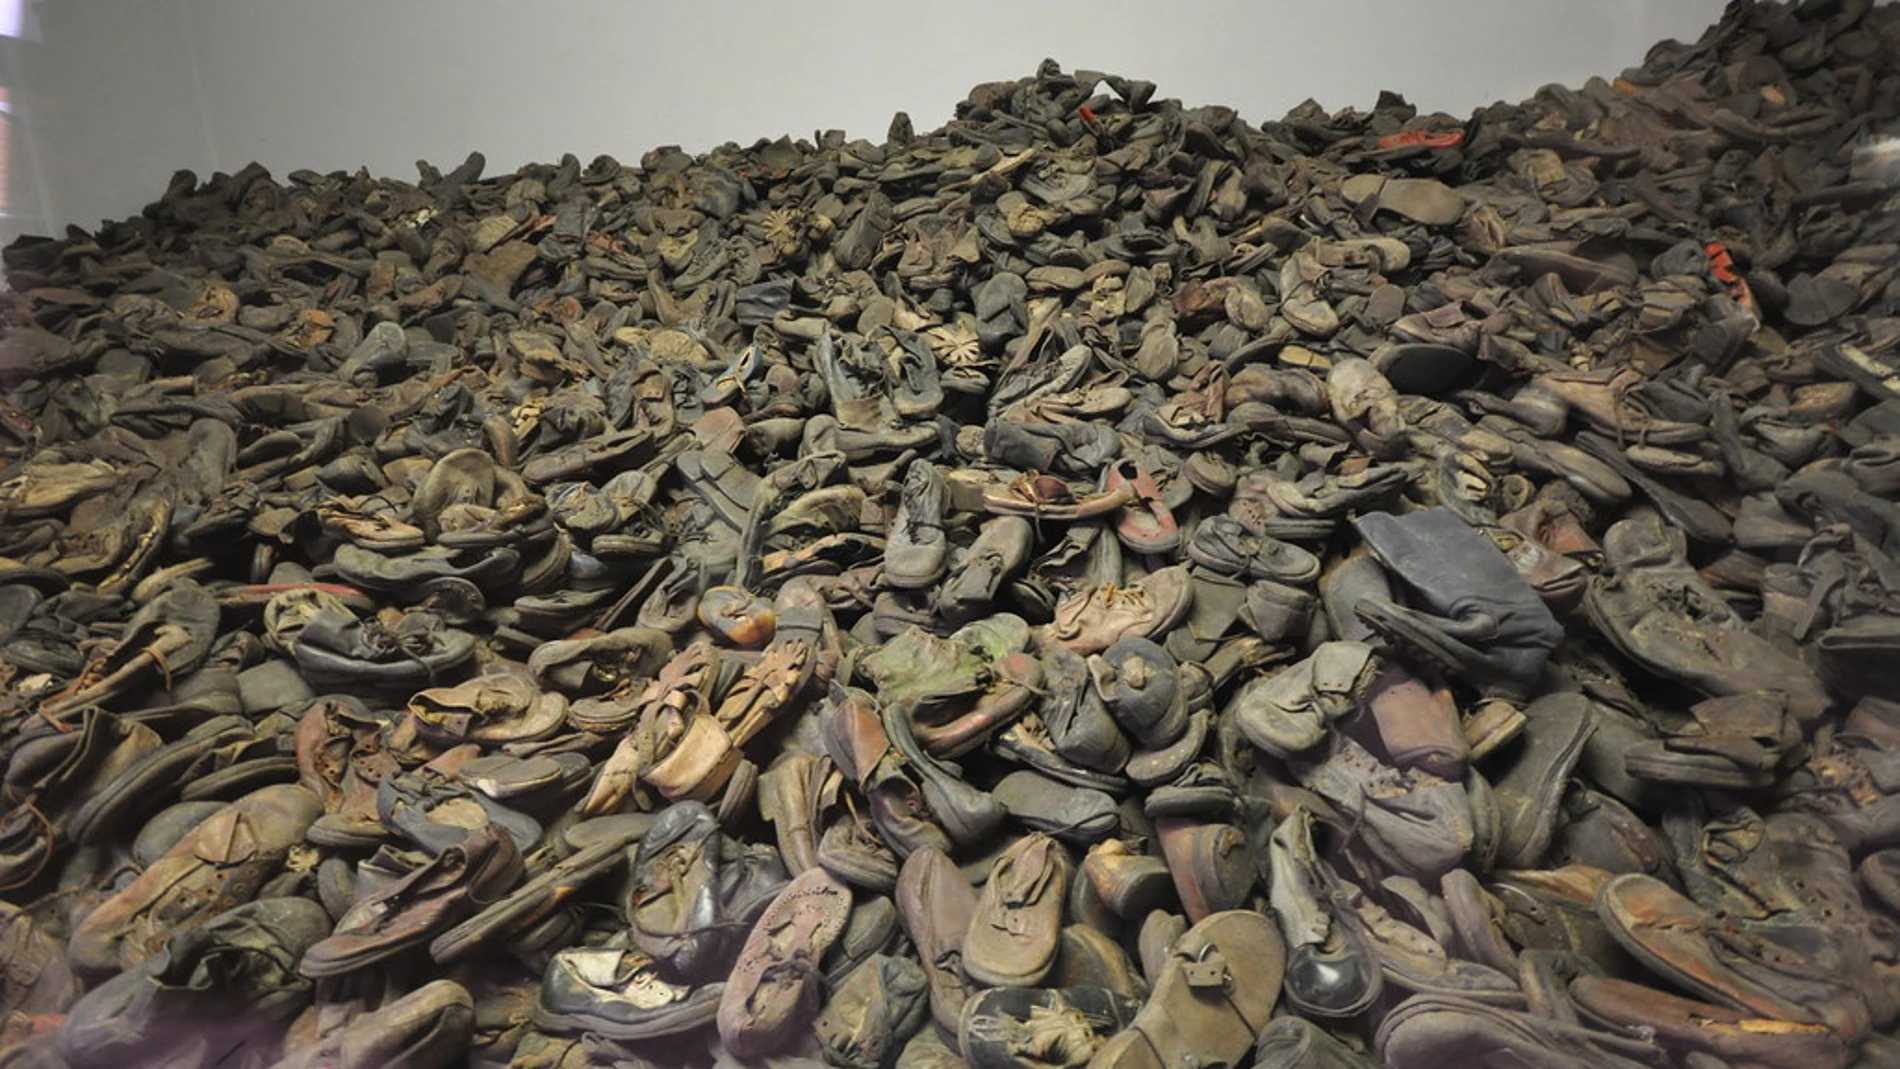 Pila de zapatos que fueron propiedad de judíos asesinados.